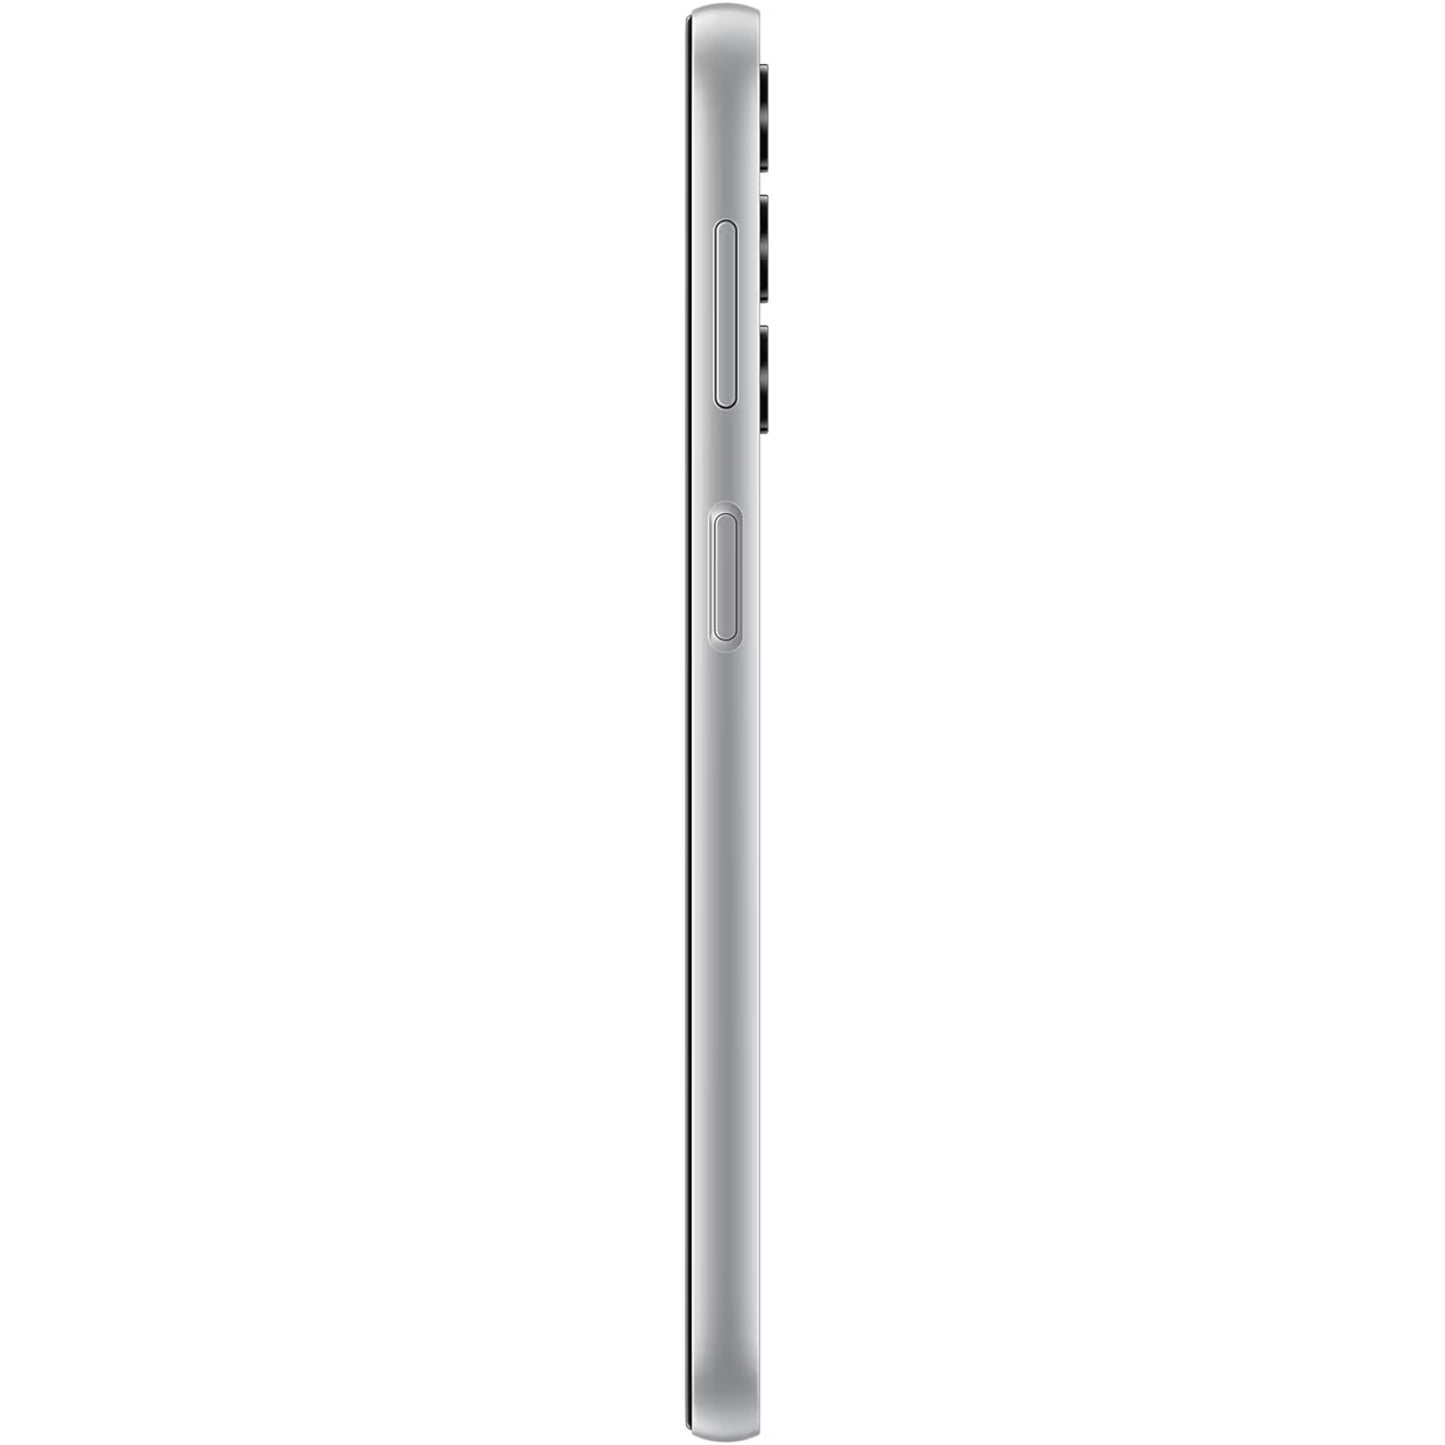 Samsung Galaxy A24 Dual Sim A245FD 4G (6GB)